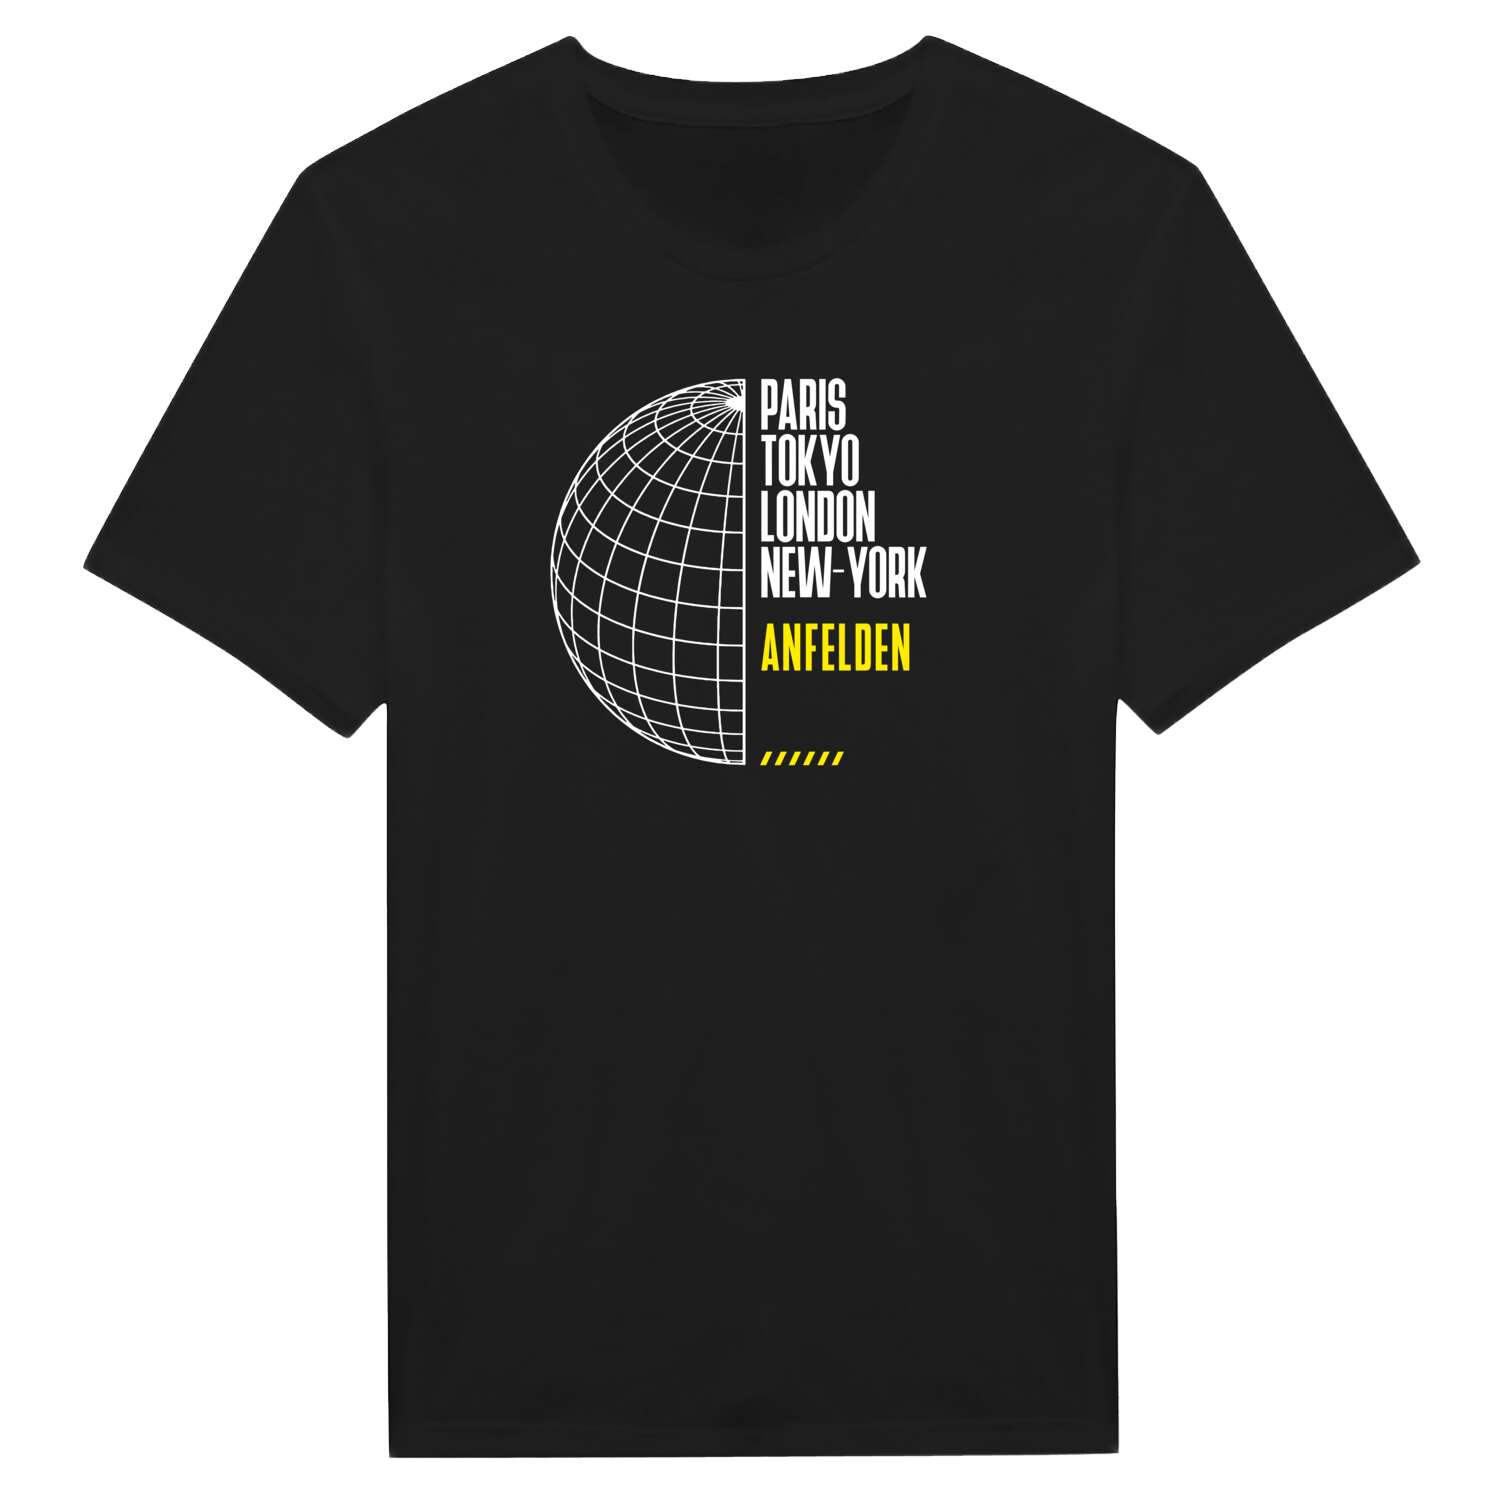 Anfelden T-Shirt »Paris Tokyo London«